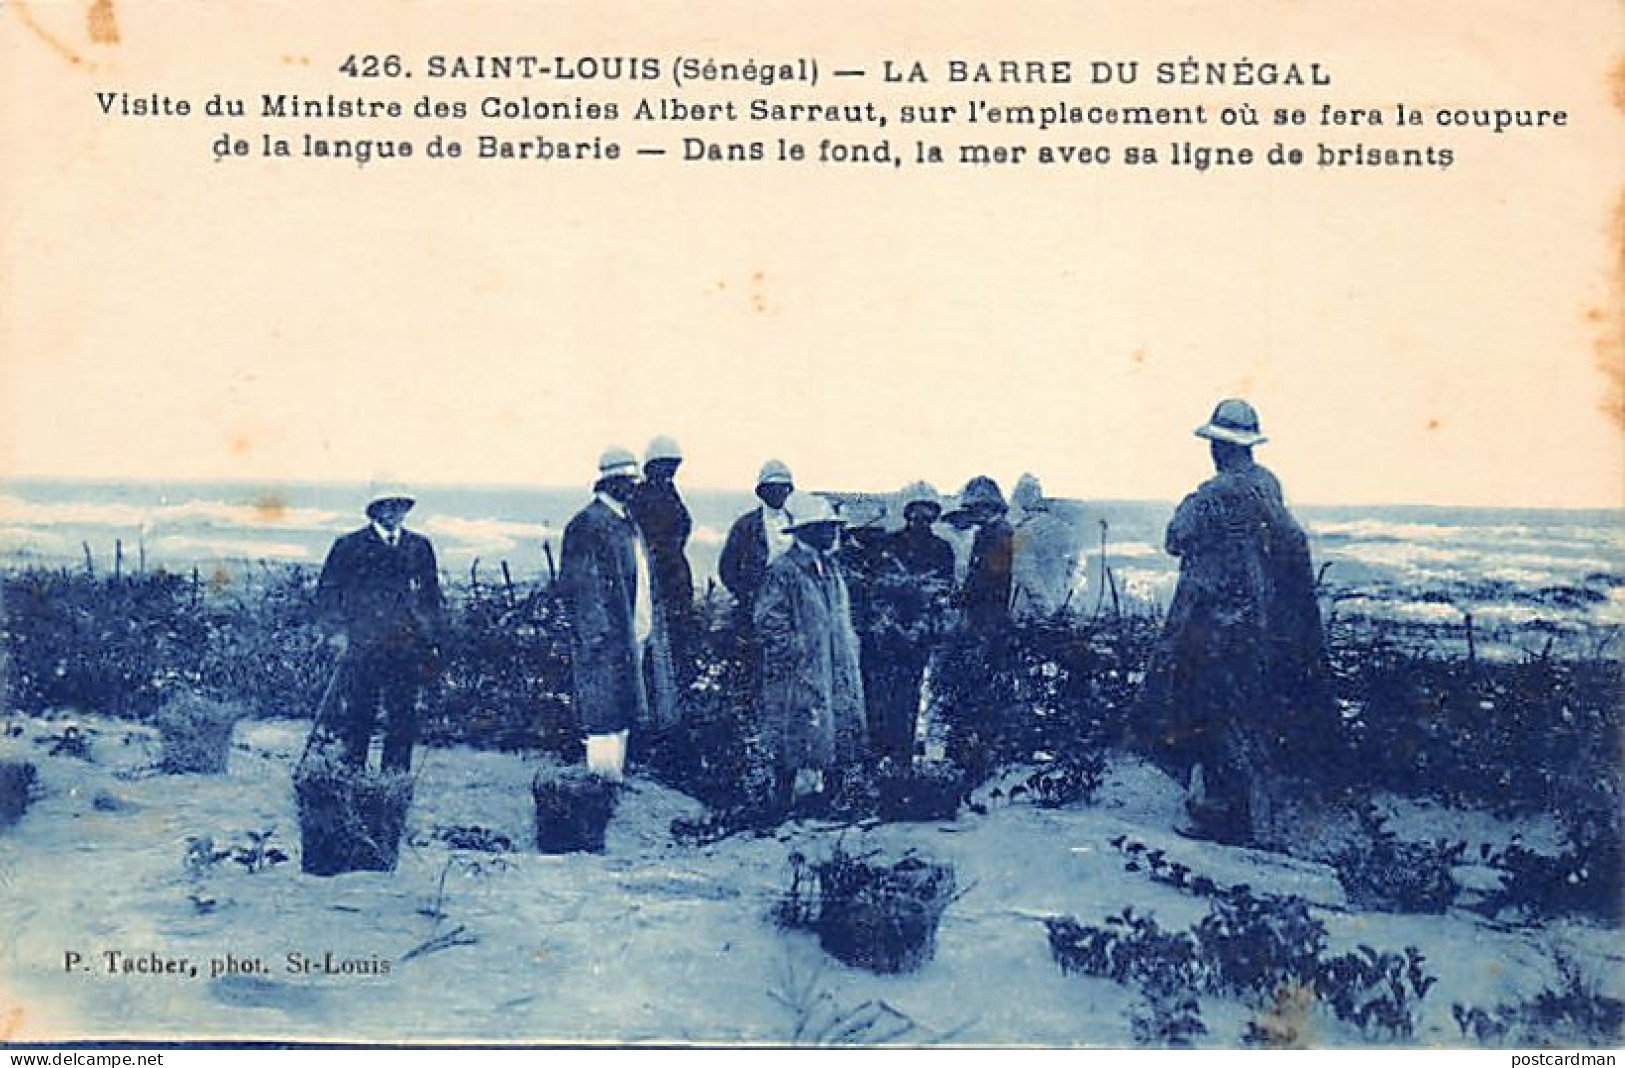 Sénégal - SAINT-LOUIS - Visite De D'Albert Sarrault à L'emplacement De La Future Barre - Ed. P. Tacher 426 - Sénégal